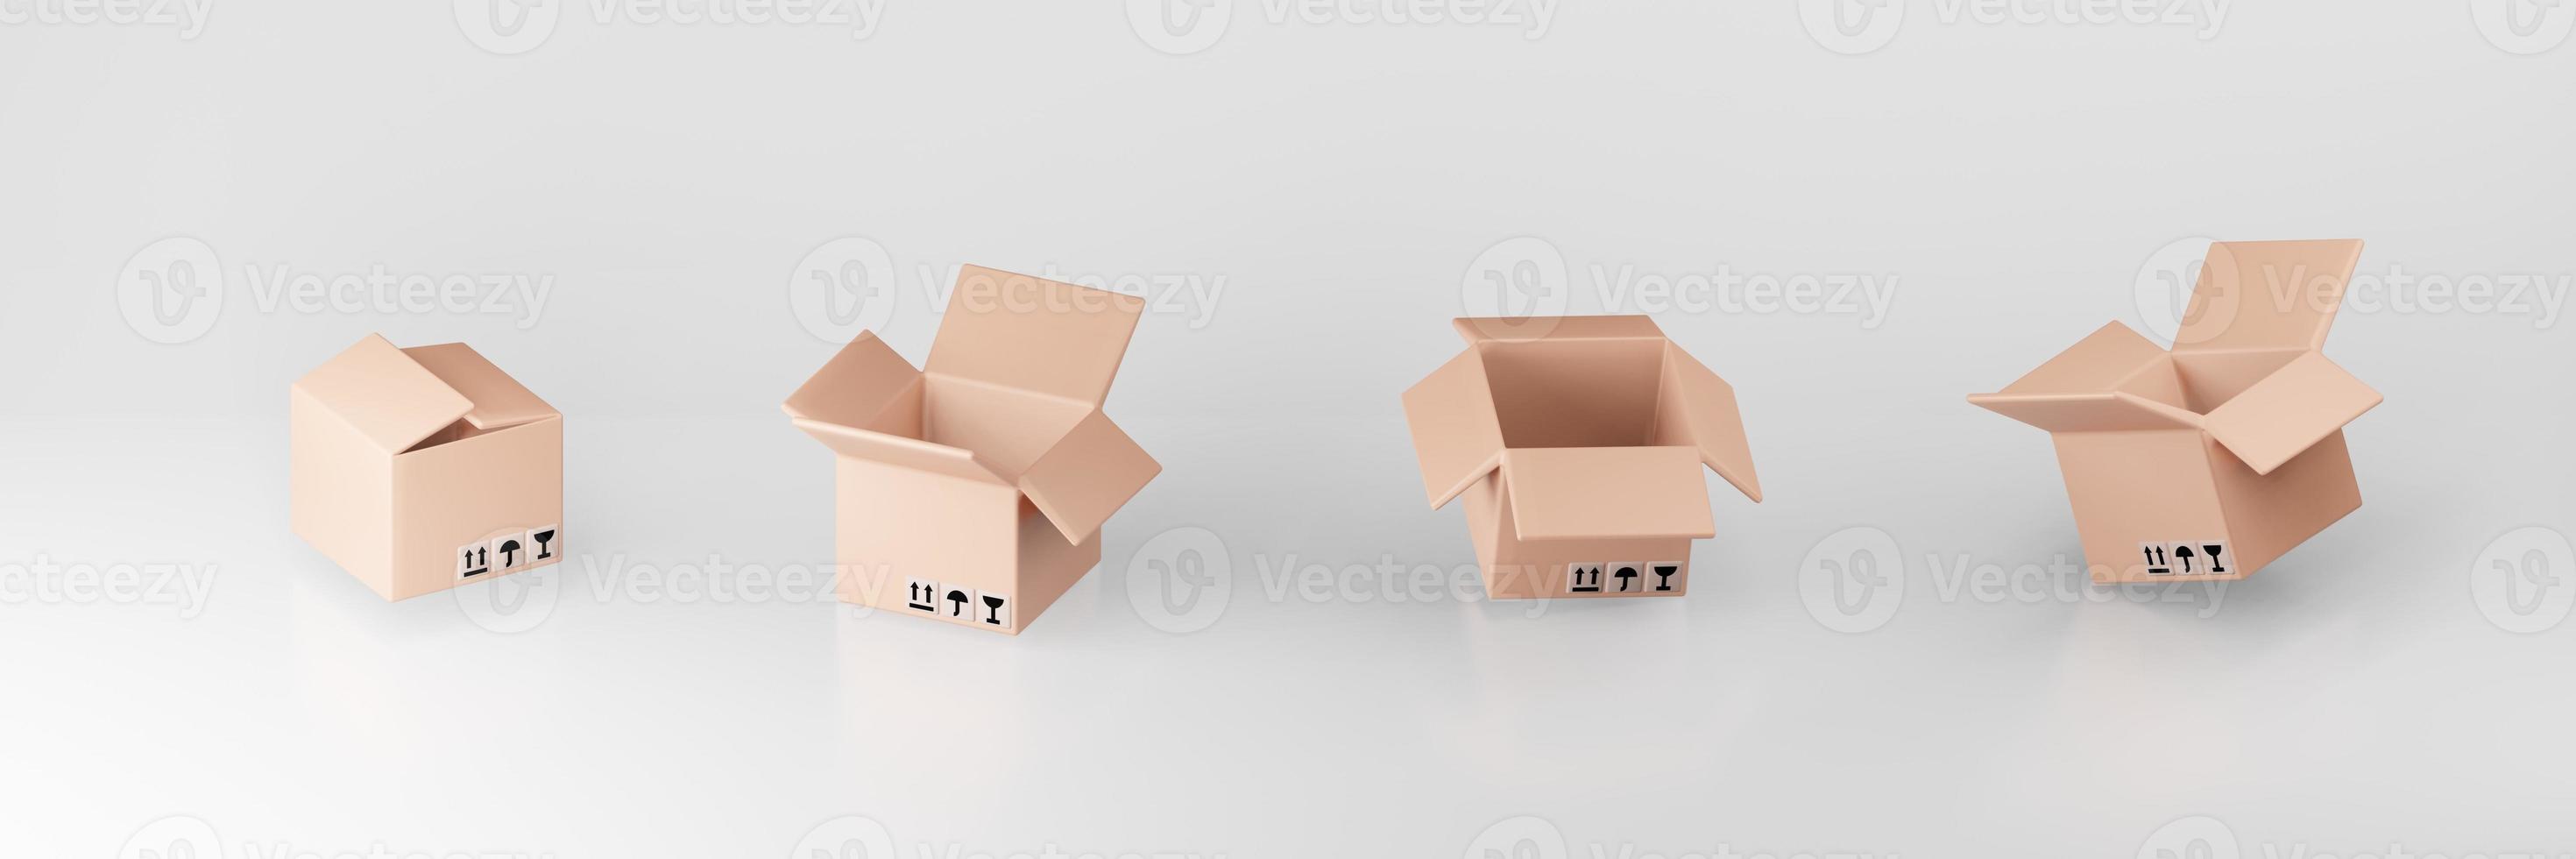 uppsättning kartonger 3d illustration leverans packning och transport frakt logistik lagring på grå bakgrund foto